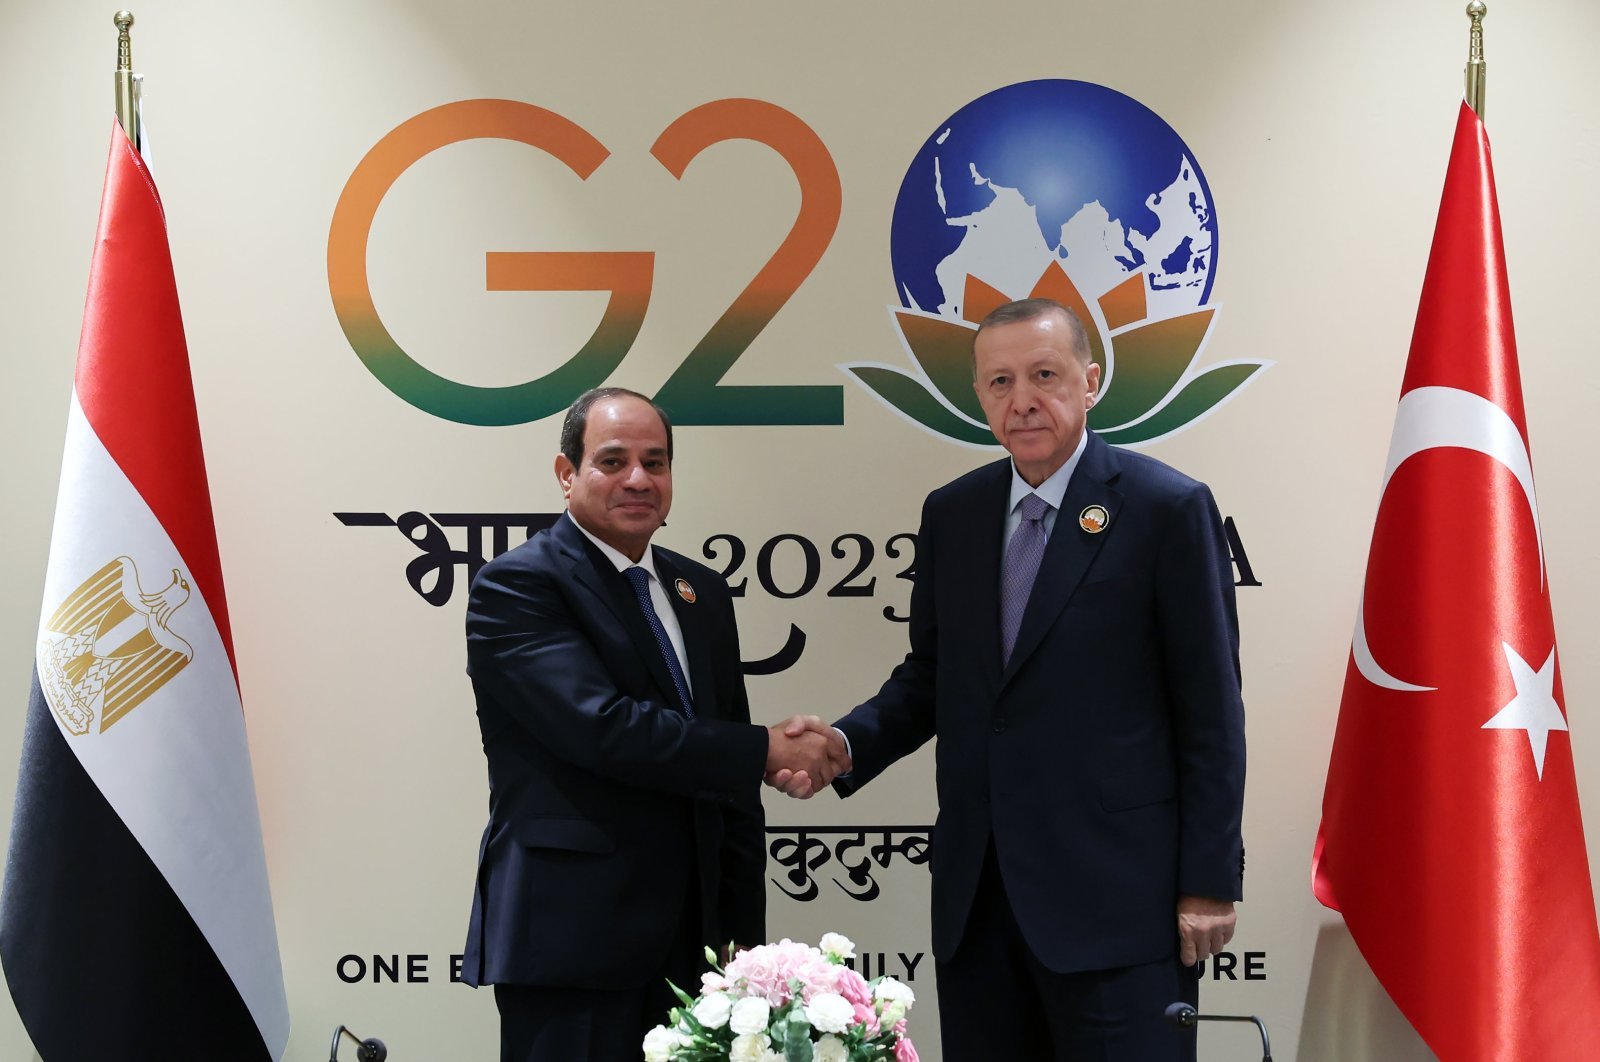 Erdoğan, Sissi discuss energy, bilateral ties at G20 sidelines